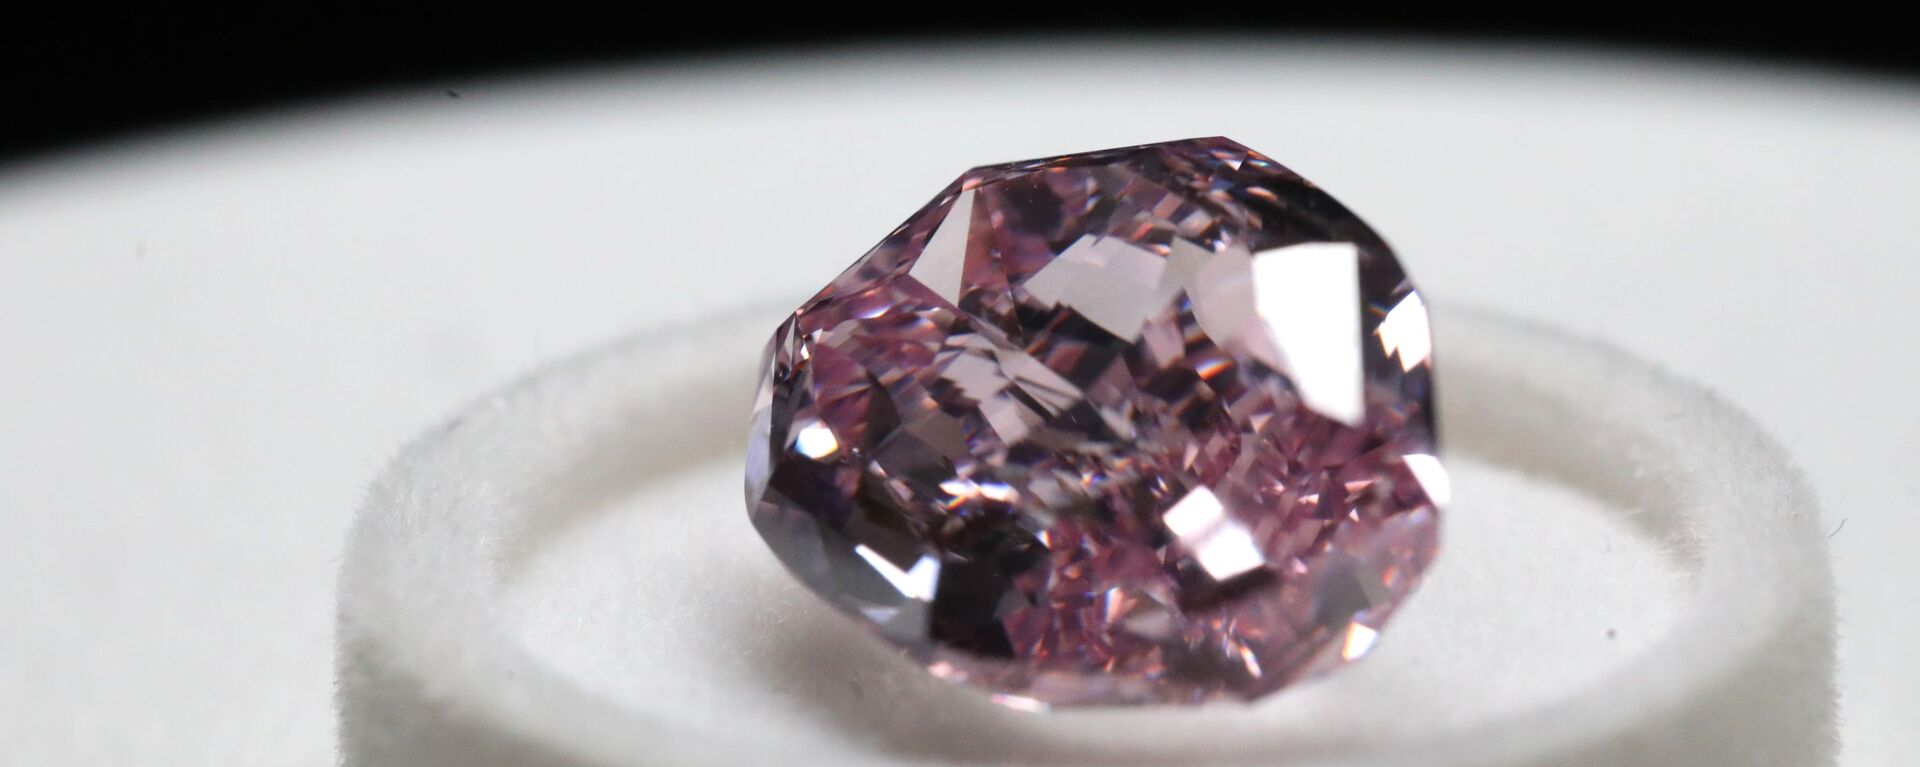 Viên kim cương Màu tím cao quý nặng 11,06 carat, chế tác theo kiểu Cushion, được trưng bày tại triển lãm kim cương của tập đoàn Alrosa,  - Sputnik Việt Nam, 1920, 16.04.2019